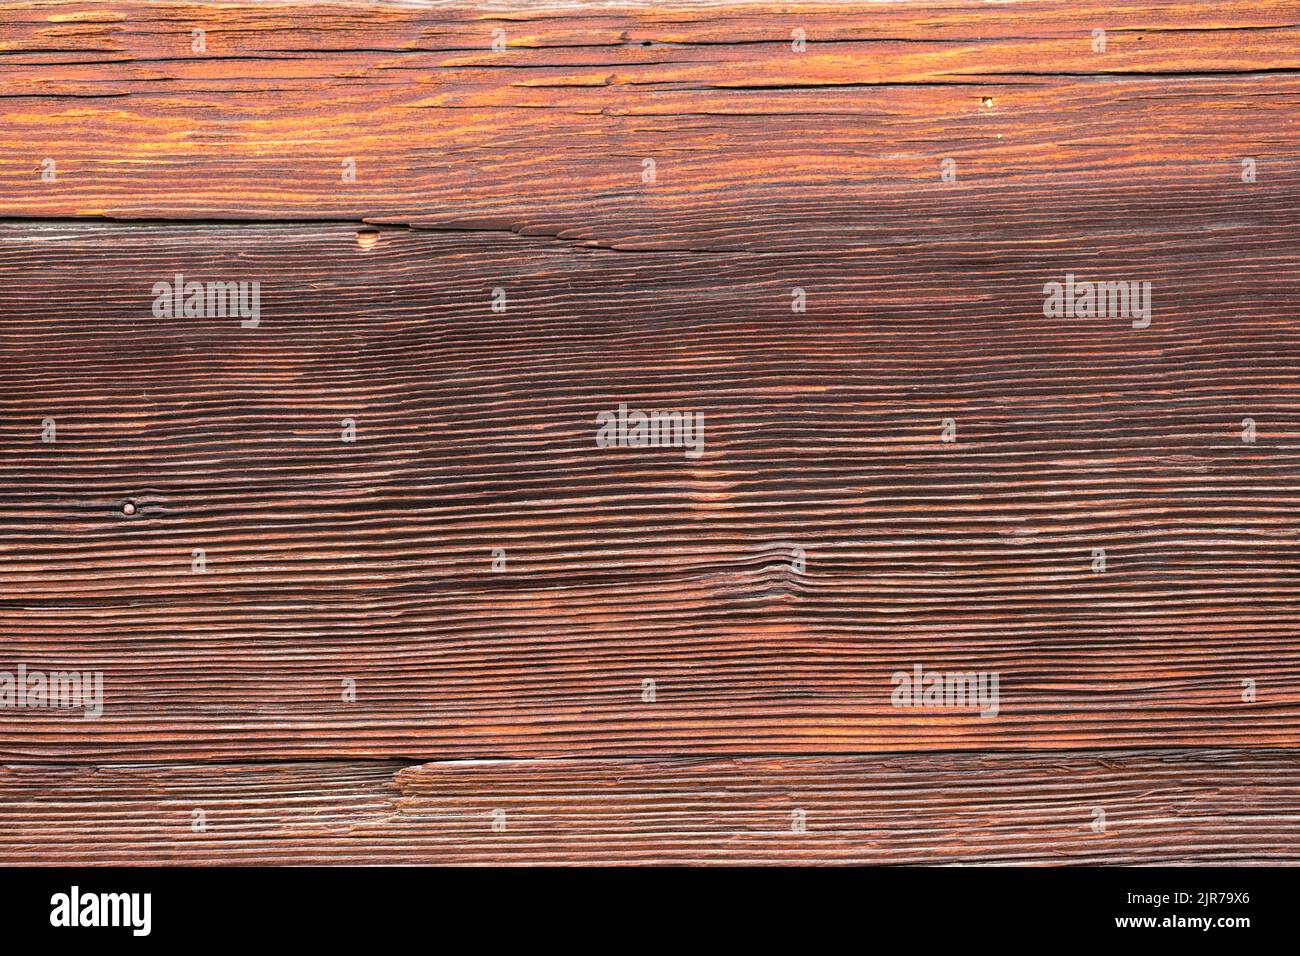 Makroaufnahme einer alten verwitterten dunkelbraunen gesprungenen Holzoberfläche mit schöner grober Maserung. Stockfoto